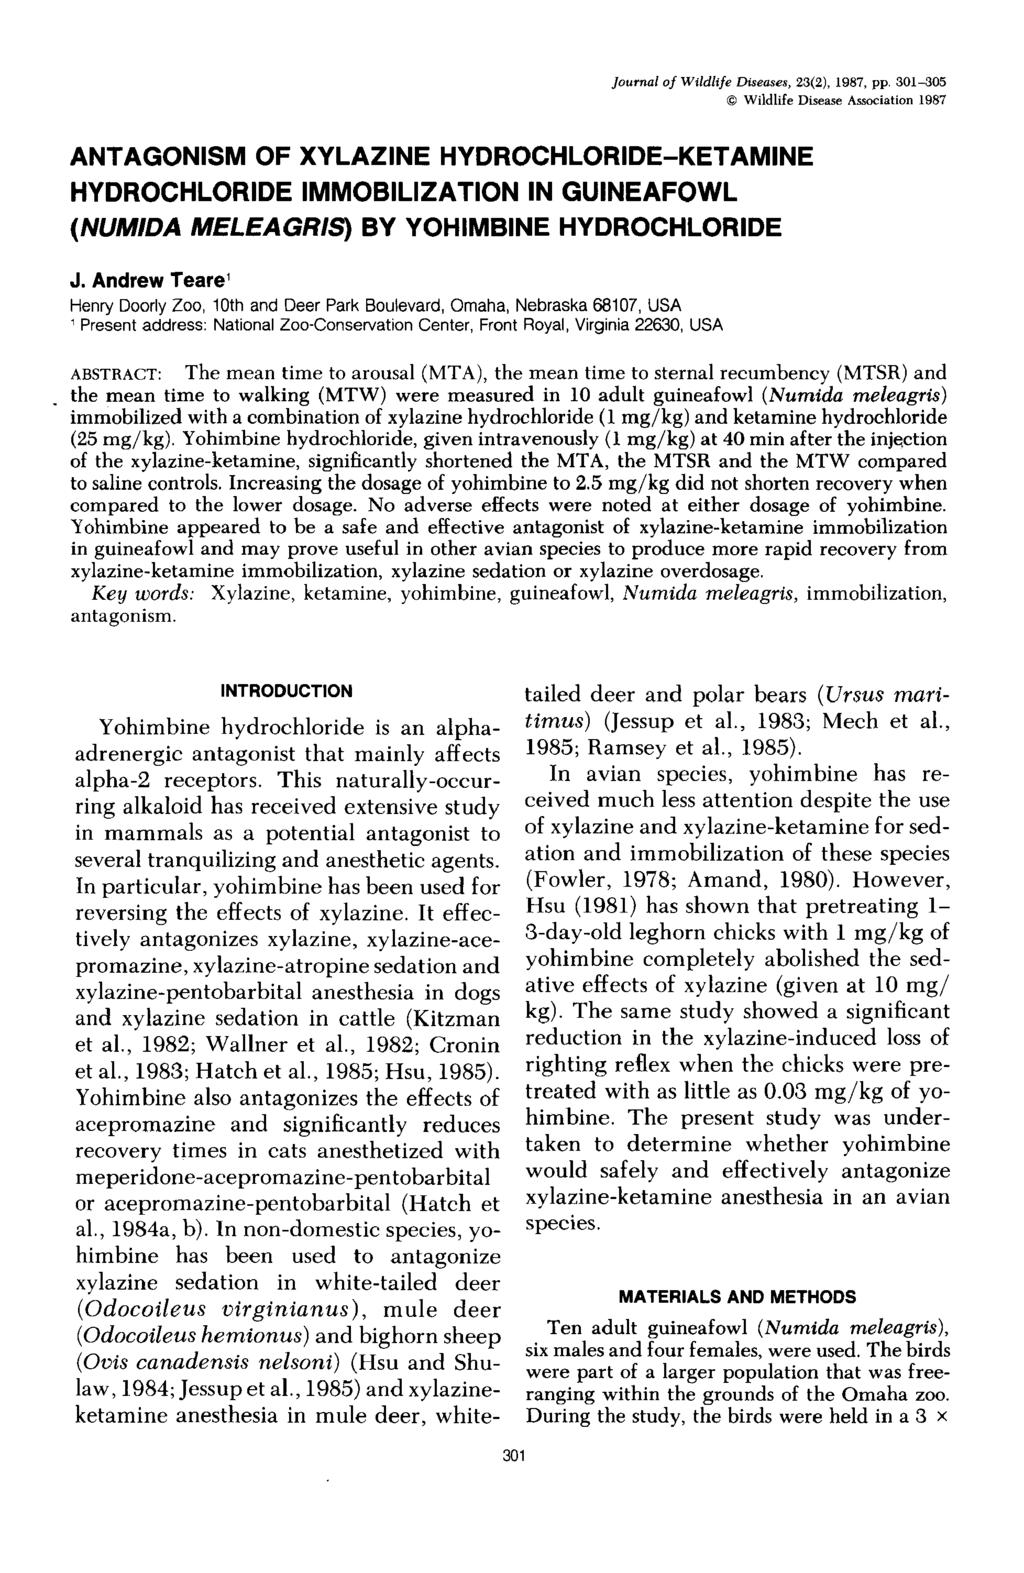 Journal of Wildlife Diseases, 23(2), 1987, pp.